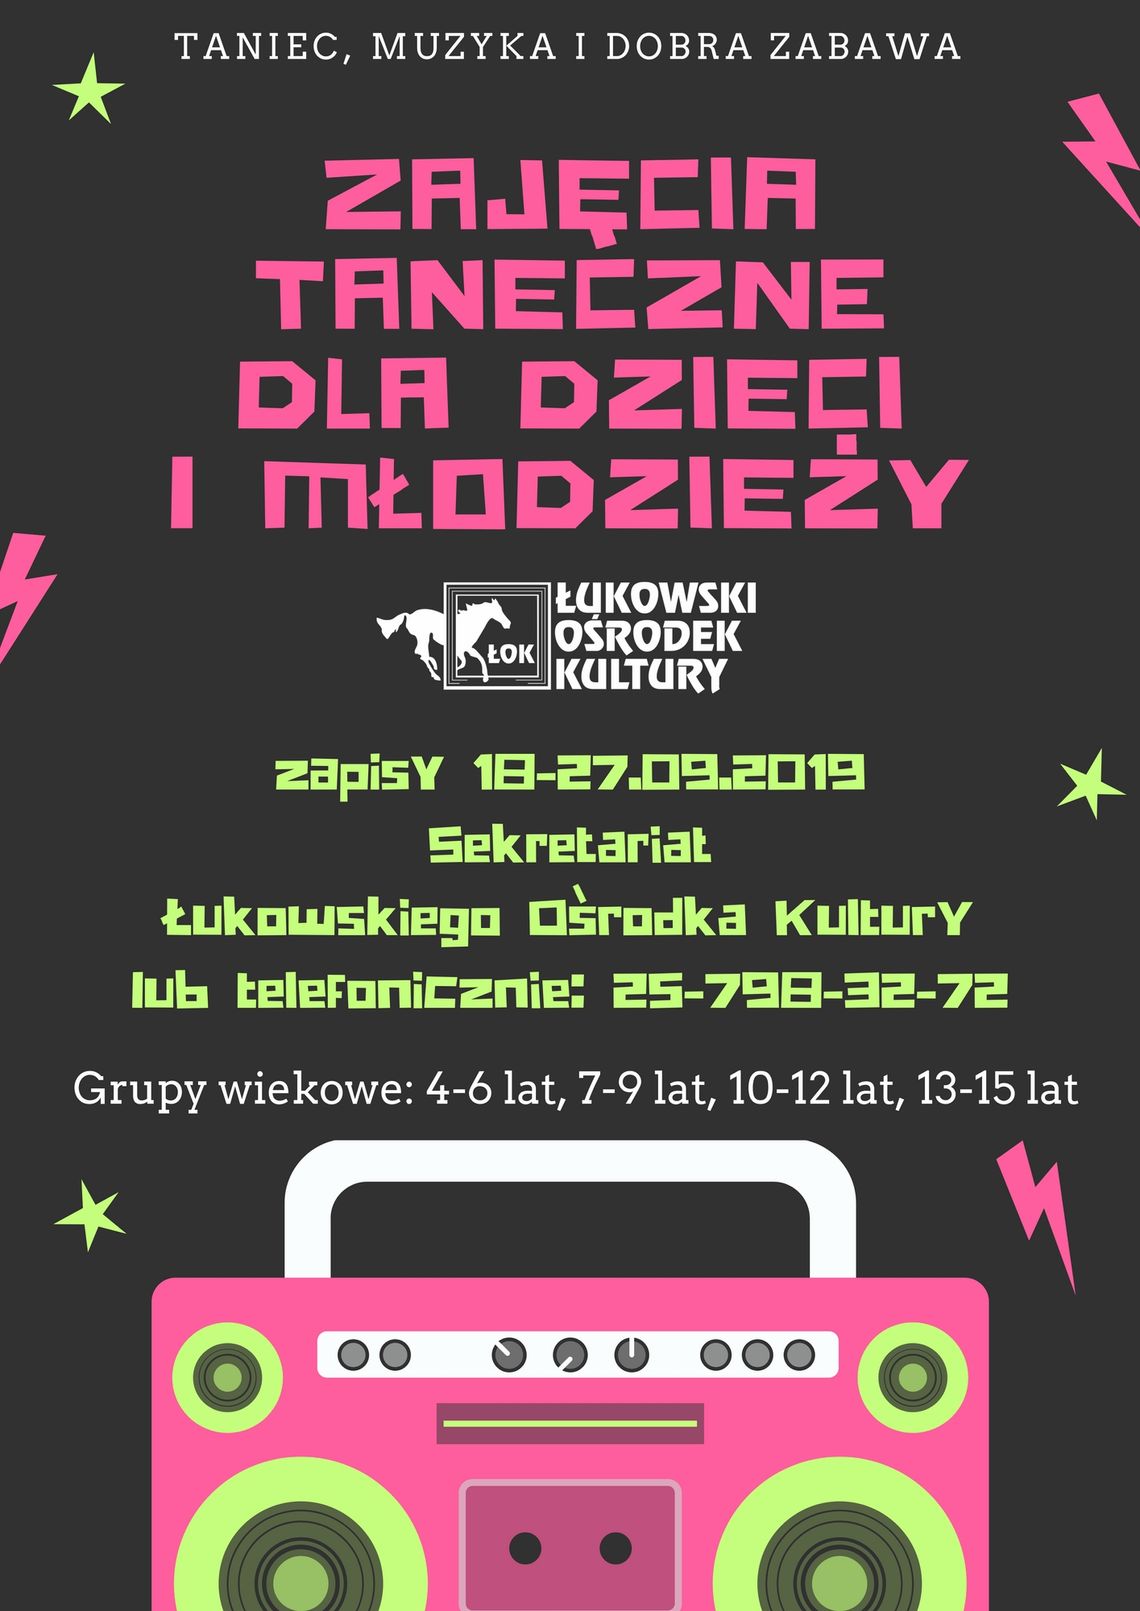 Zajęcia taneczne w Łukowskim Ośrodku Kultury /zapisy 18-27 września 2019